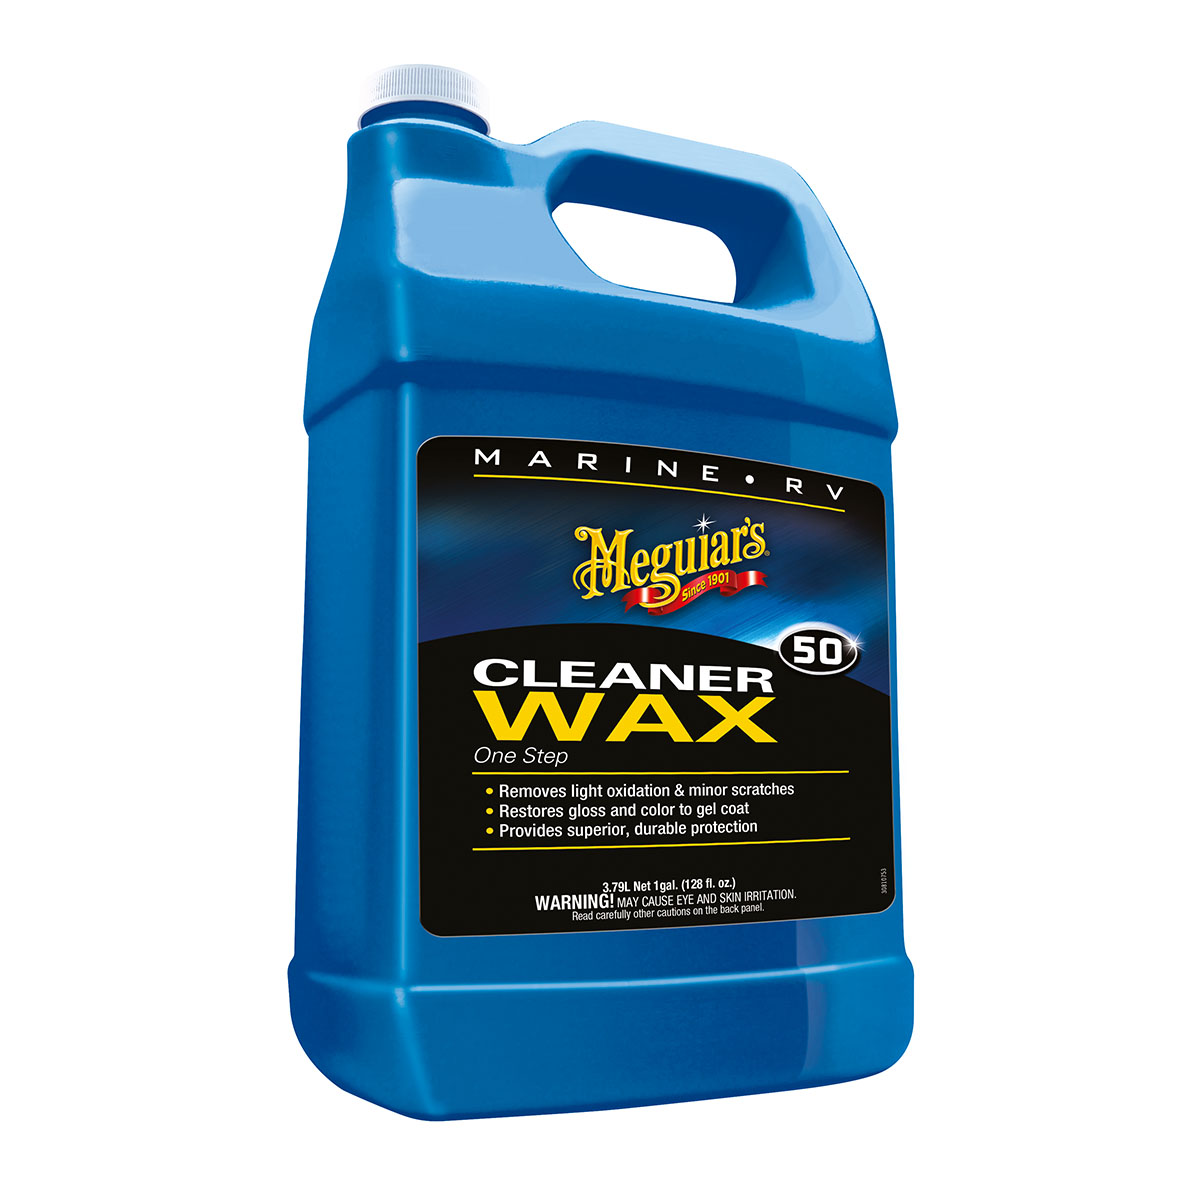 MEGUIARS Cleaner Wax One Step Liquid - 3,78 ltr // ABVERKAUF zum radikalen Sonderpreis, nur solange Vorrat reicht